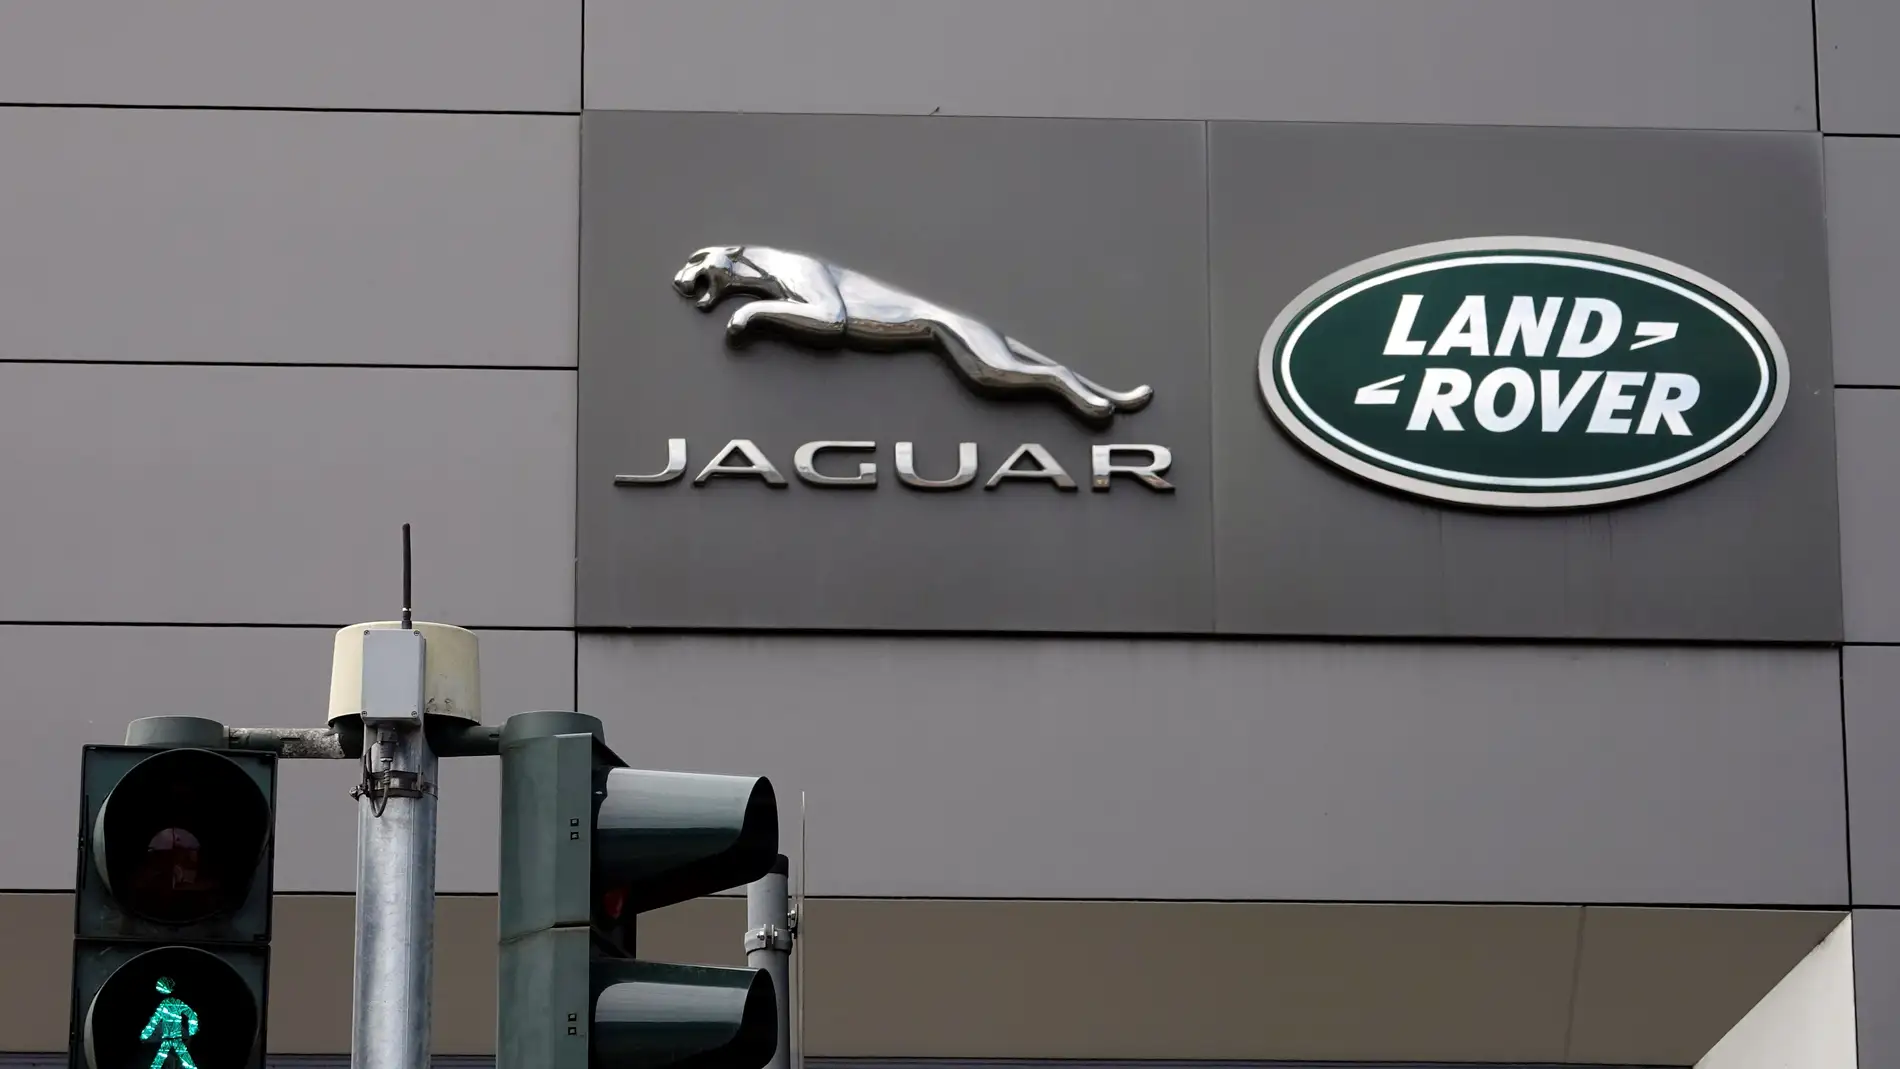 El logotipo de la compañía inglesa de automoción Jaguar Land Rover